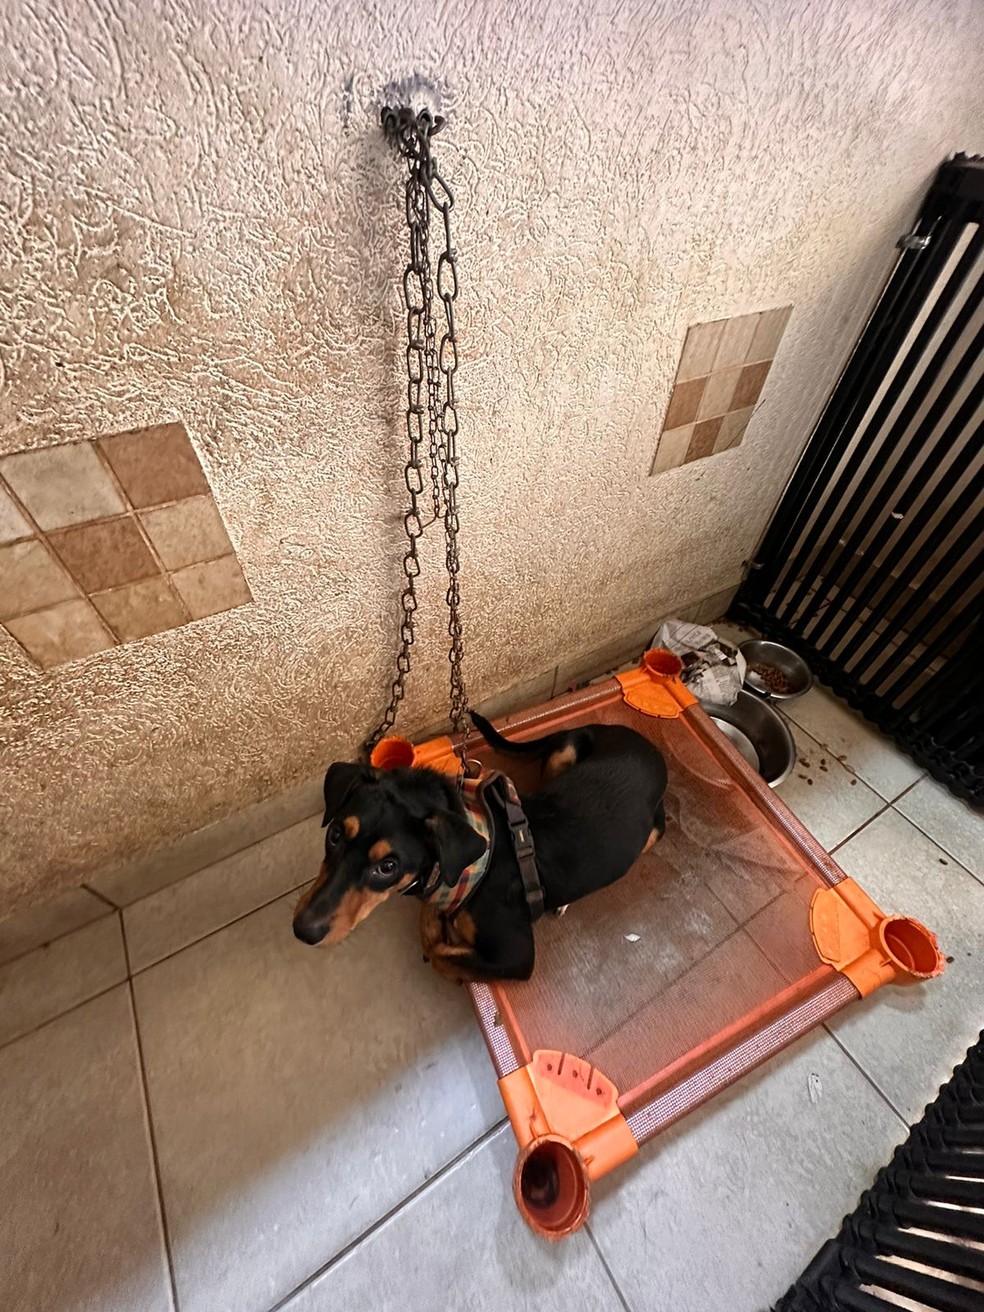 Registro mostra um cachorro preso com uma corrente na parede — Foto: Decat/Divulgação